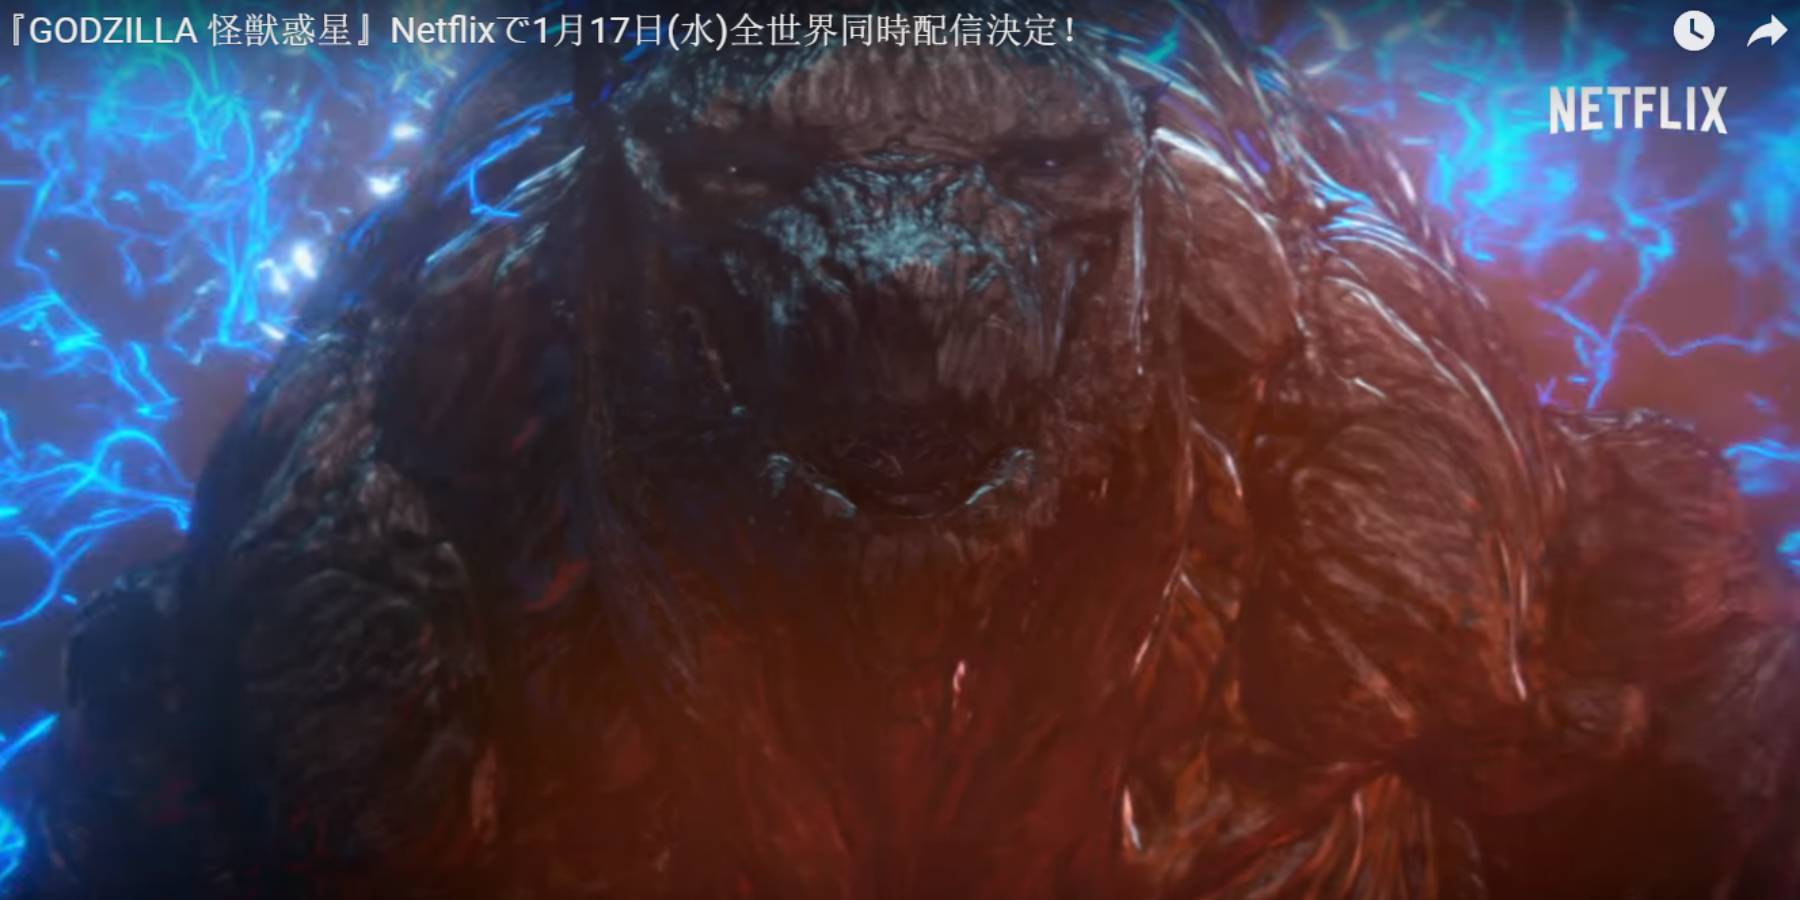 Godzilla: Planeta de Monstruos disponible en Netflix desde el 17 de enero